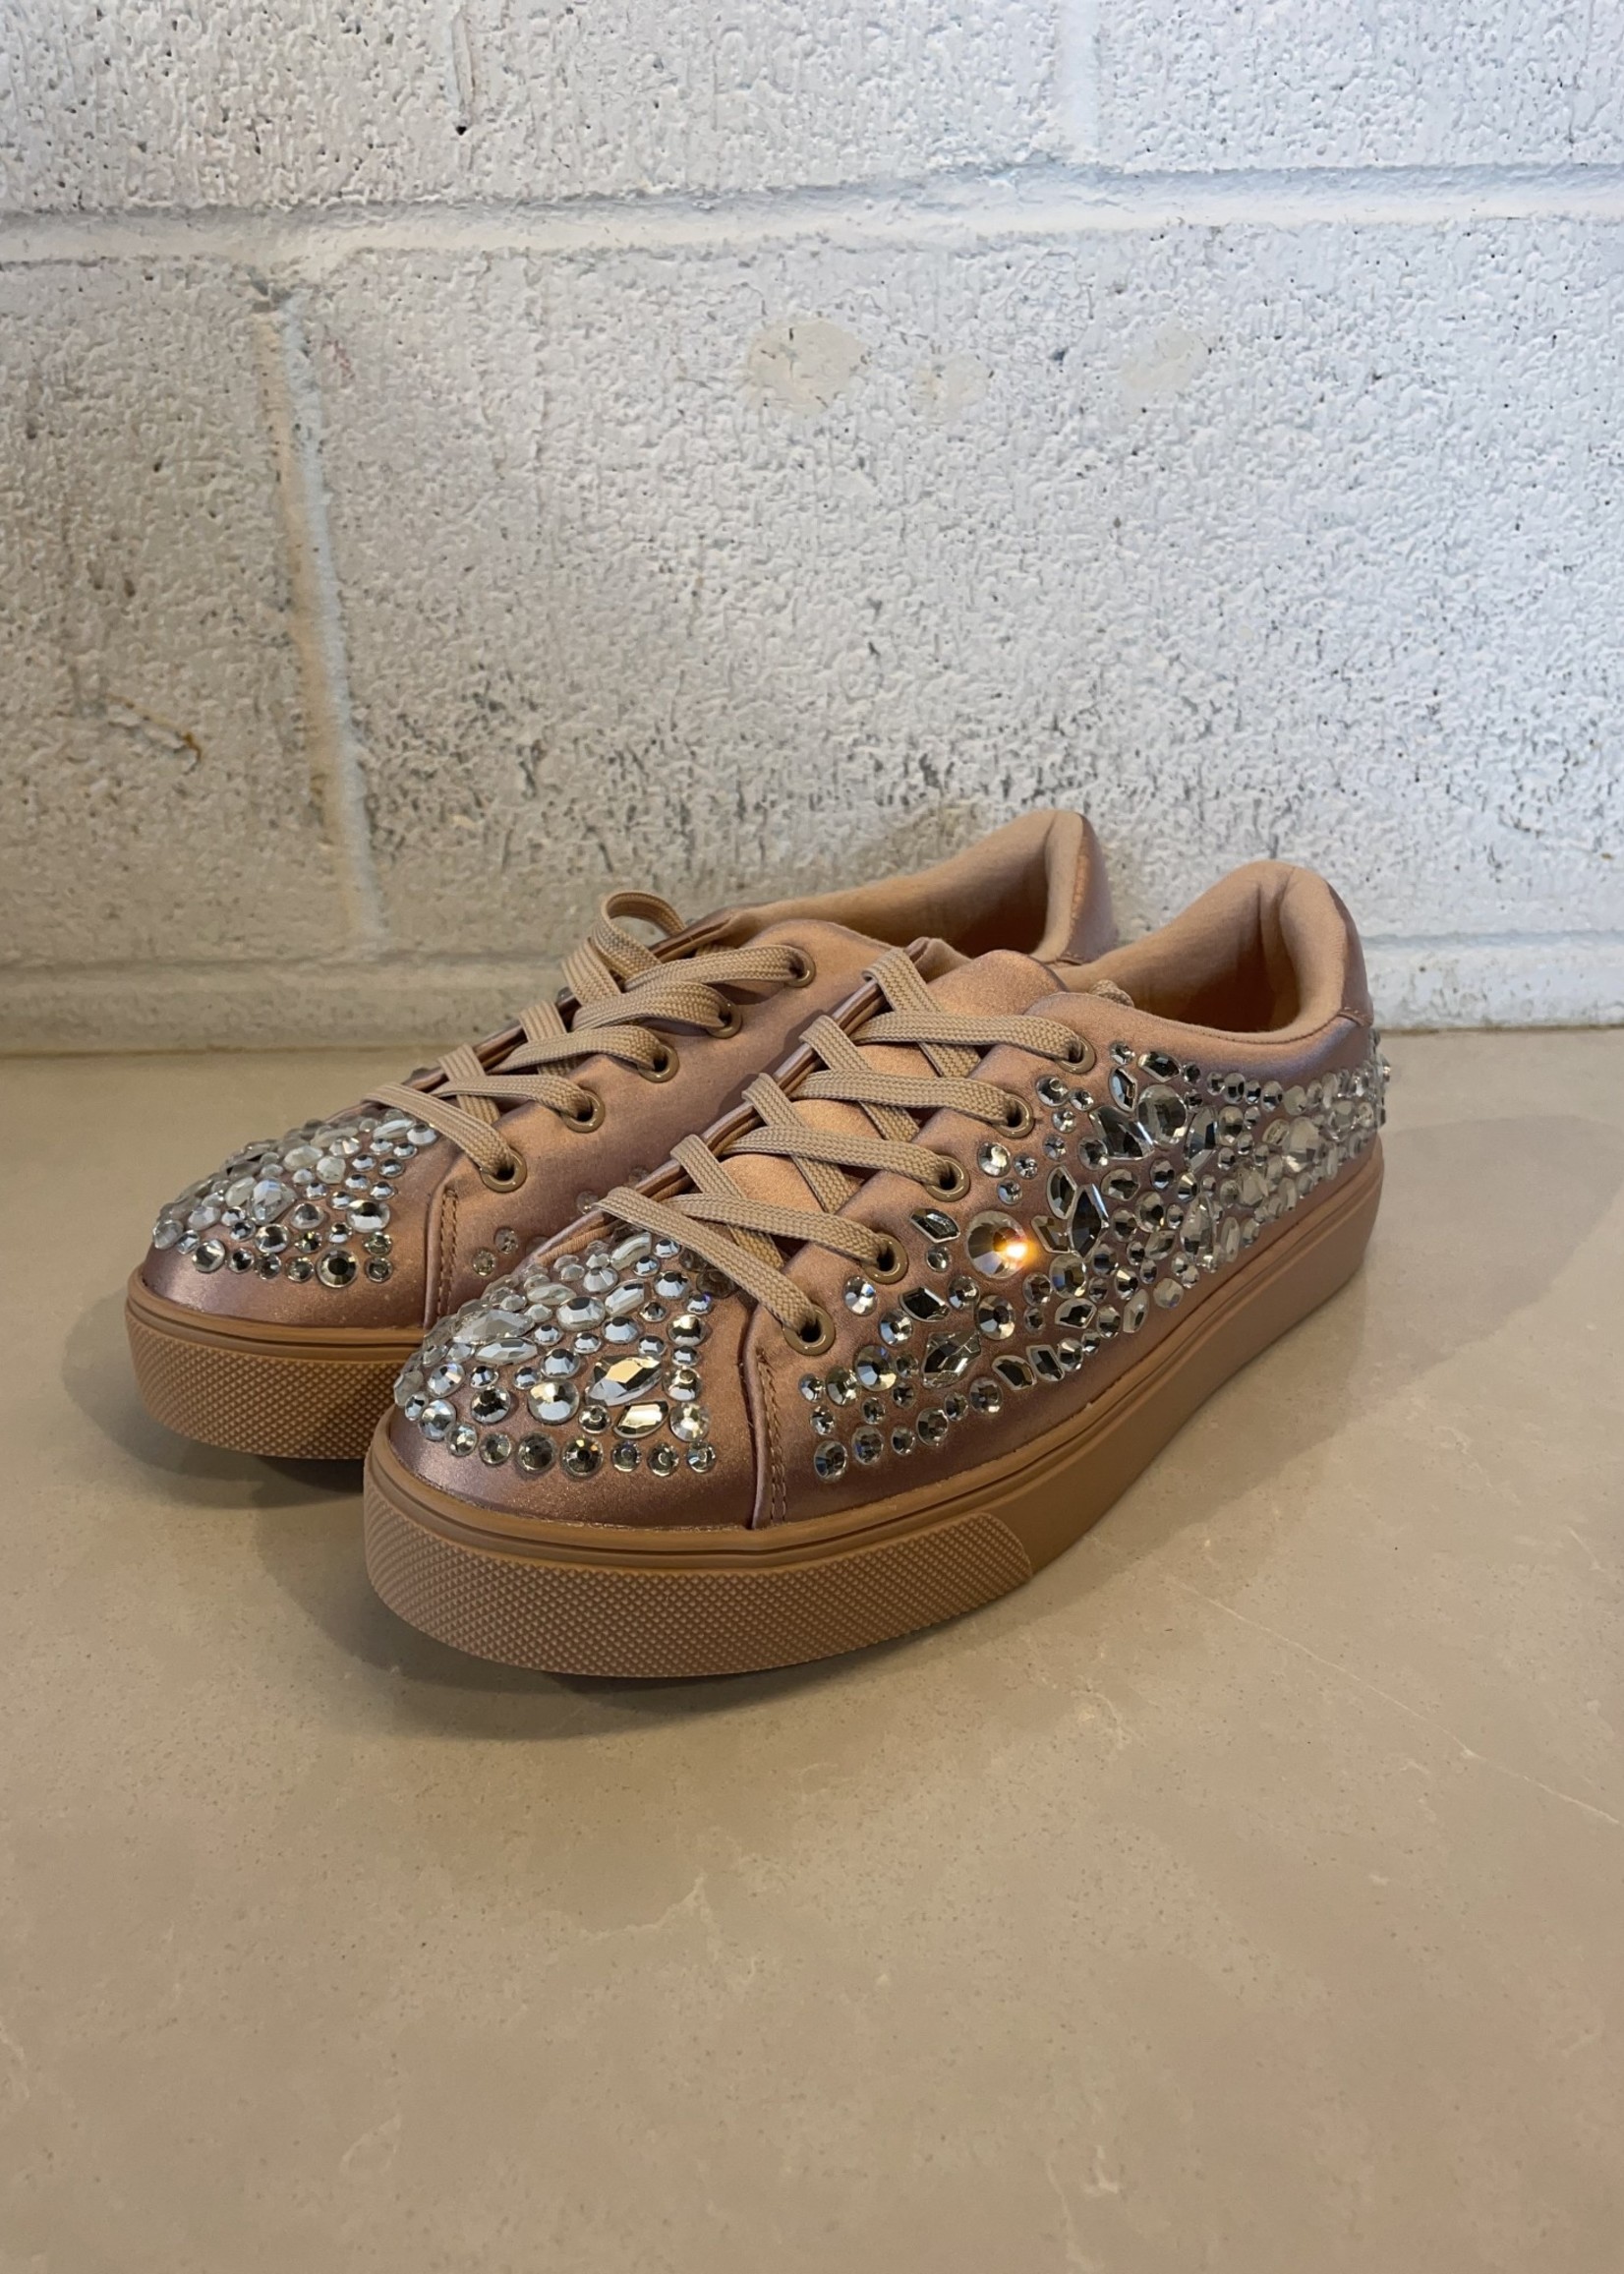 Aldo Pink Jewel Sneakers 7